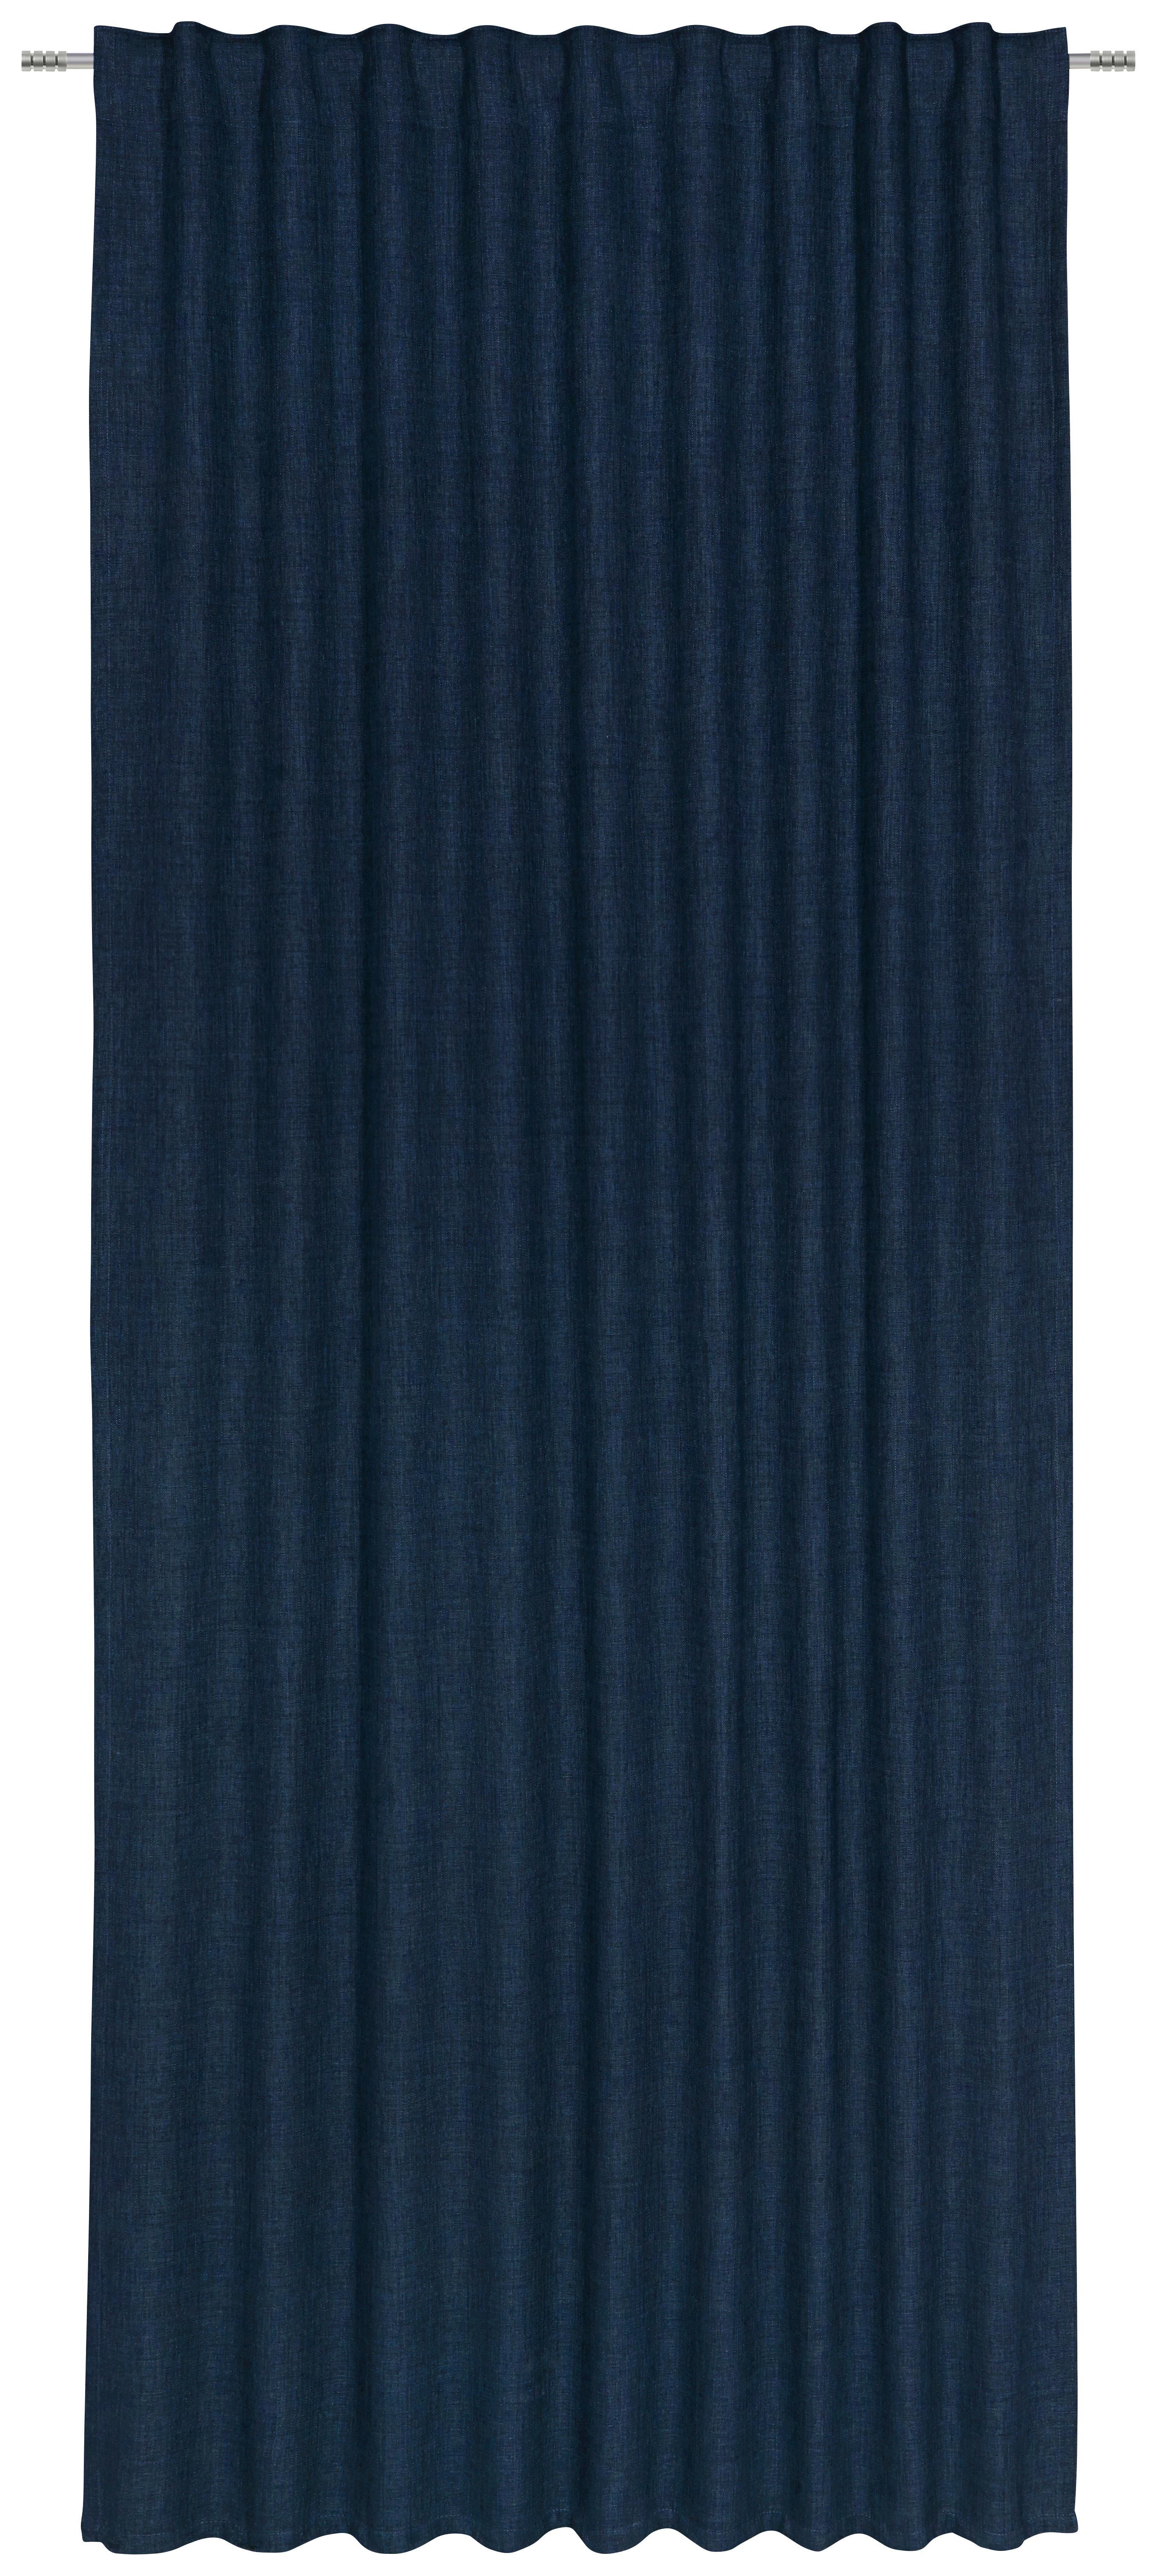 Hotový Záves Leo, 135/255cm, Tm.modrá - tmavomodrá, textil (135/255cm) - Premium Living